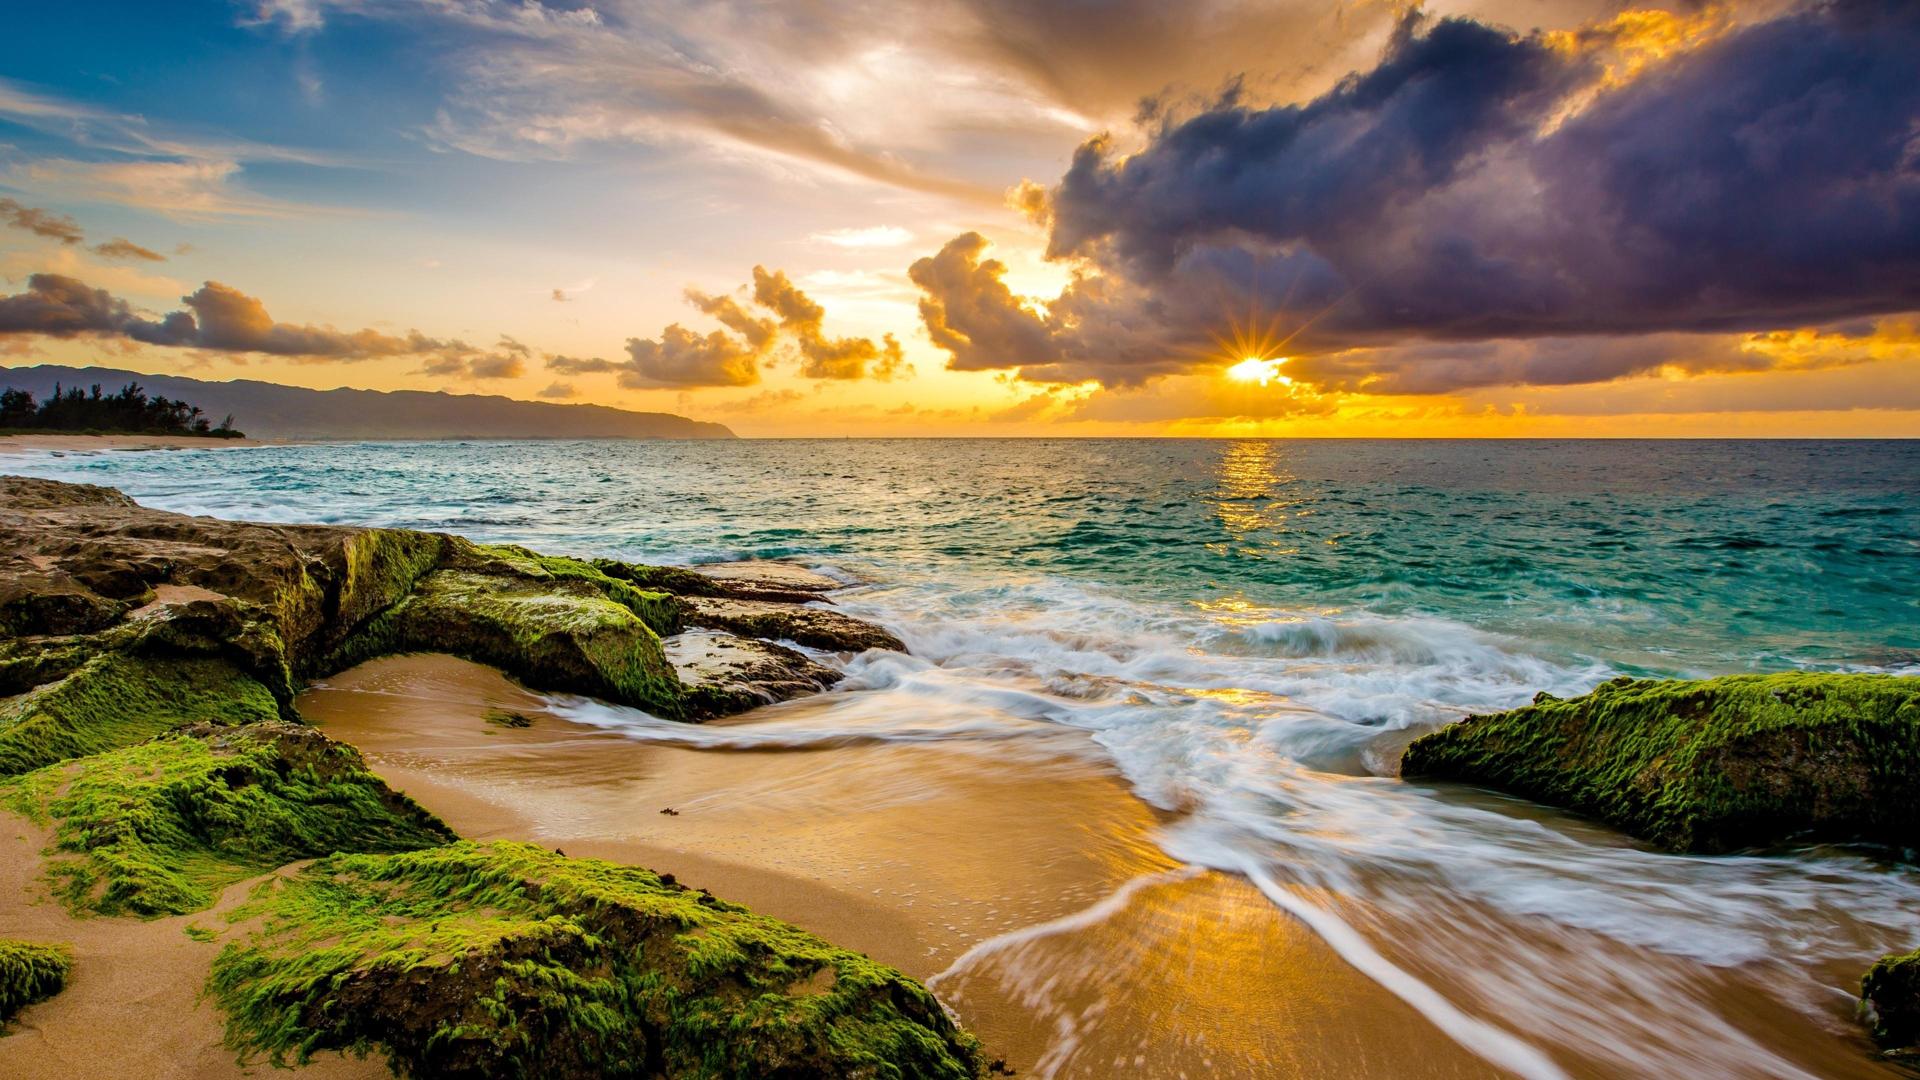 壁纸1920×1200夏威夷的碧海蓝天 夏威夷海滩图片 蓝天碧海沙滩壁纸,夏威夷浪漫海滩壁纸图片-风景壁纸-风景图片素材-桌面壁纸